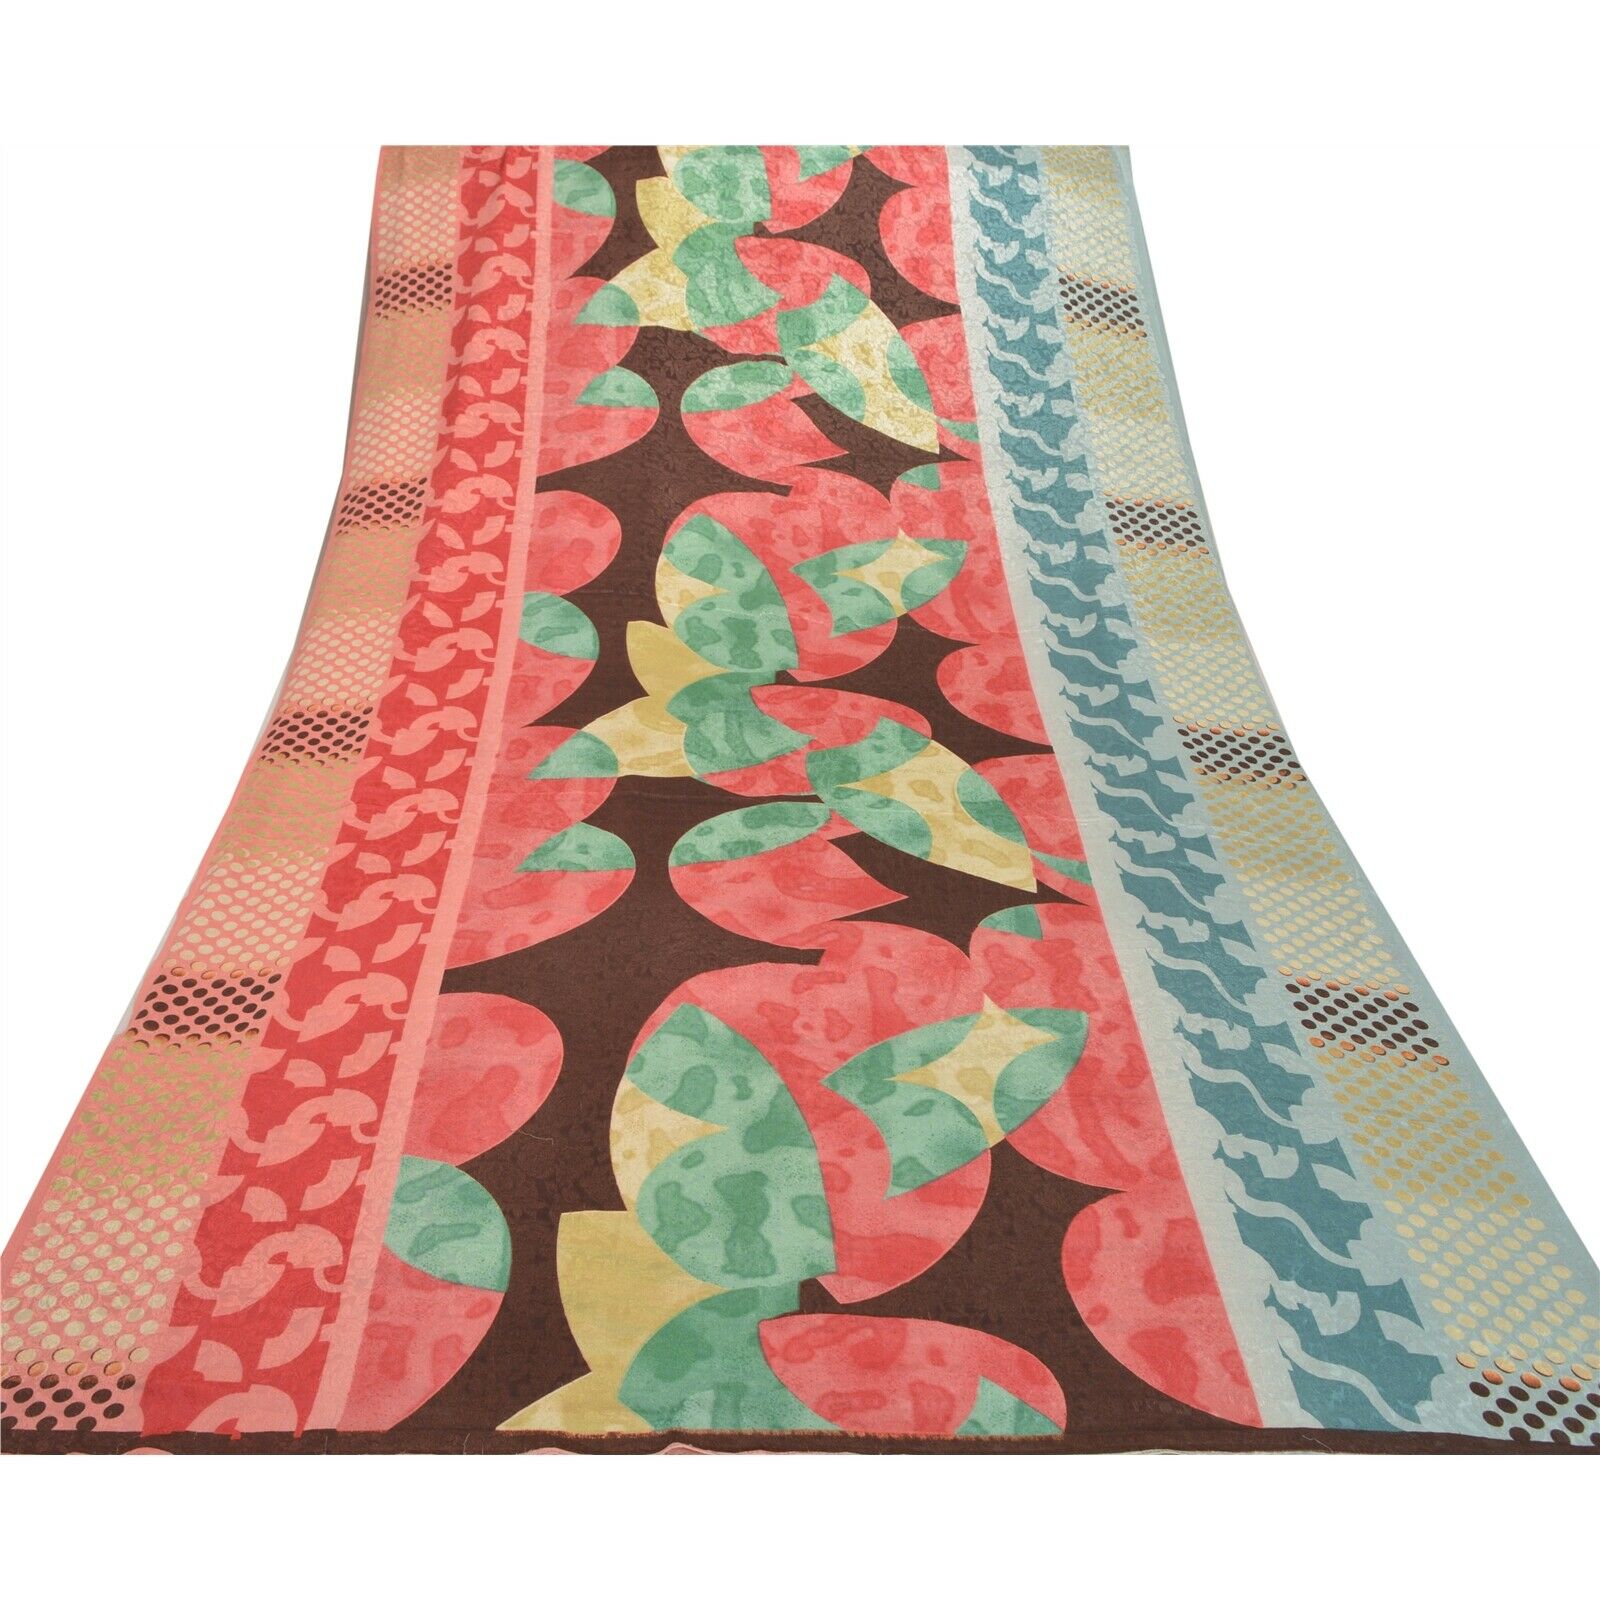 Sanskriti Vintage Pink Sarees Moss Crepe Printed Woven Sari Decor Craft Fabric